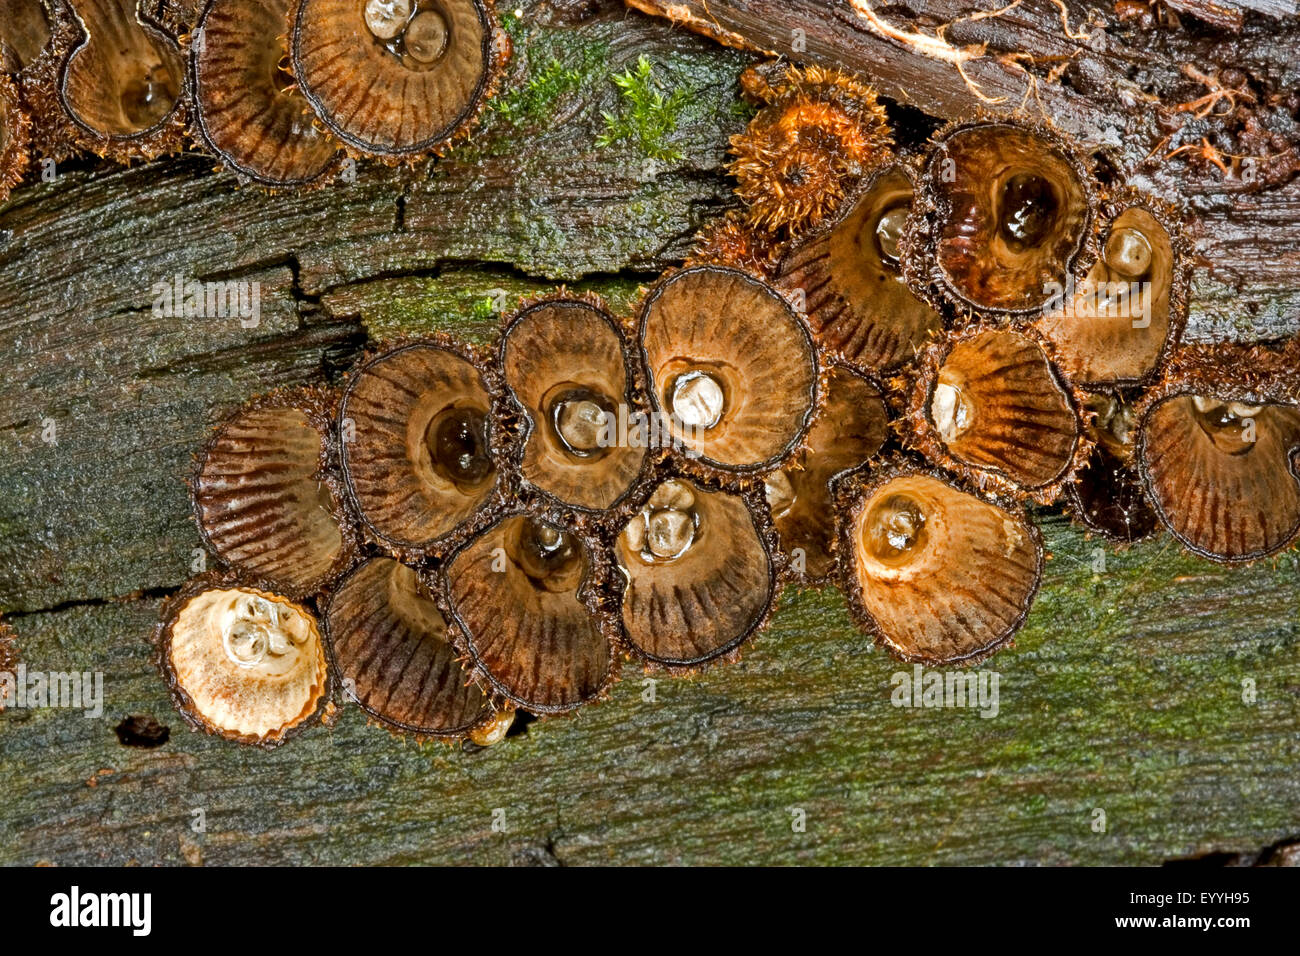 Nid d'oiseau à cannelures (Cyathus striatus, Peziza striata, Cyathella striata), des organes de fructification sur le bois mort, Allemagne Banque D'Images